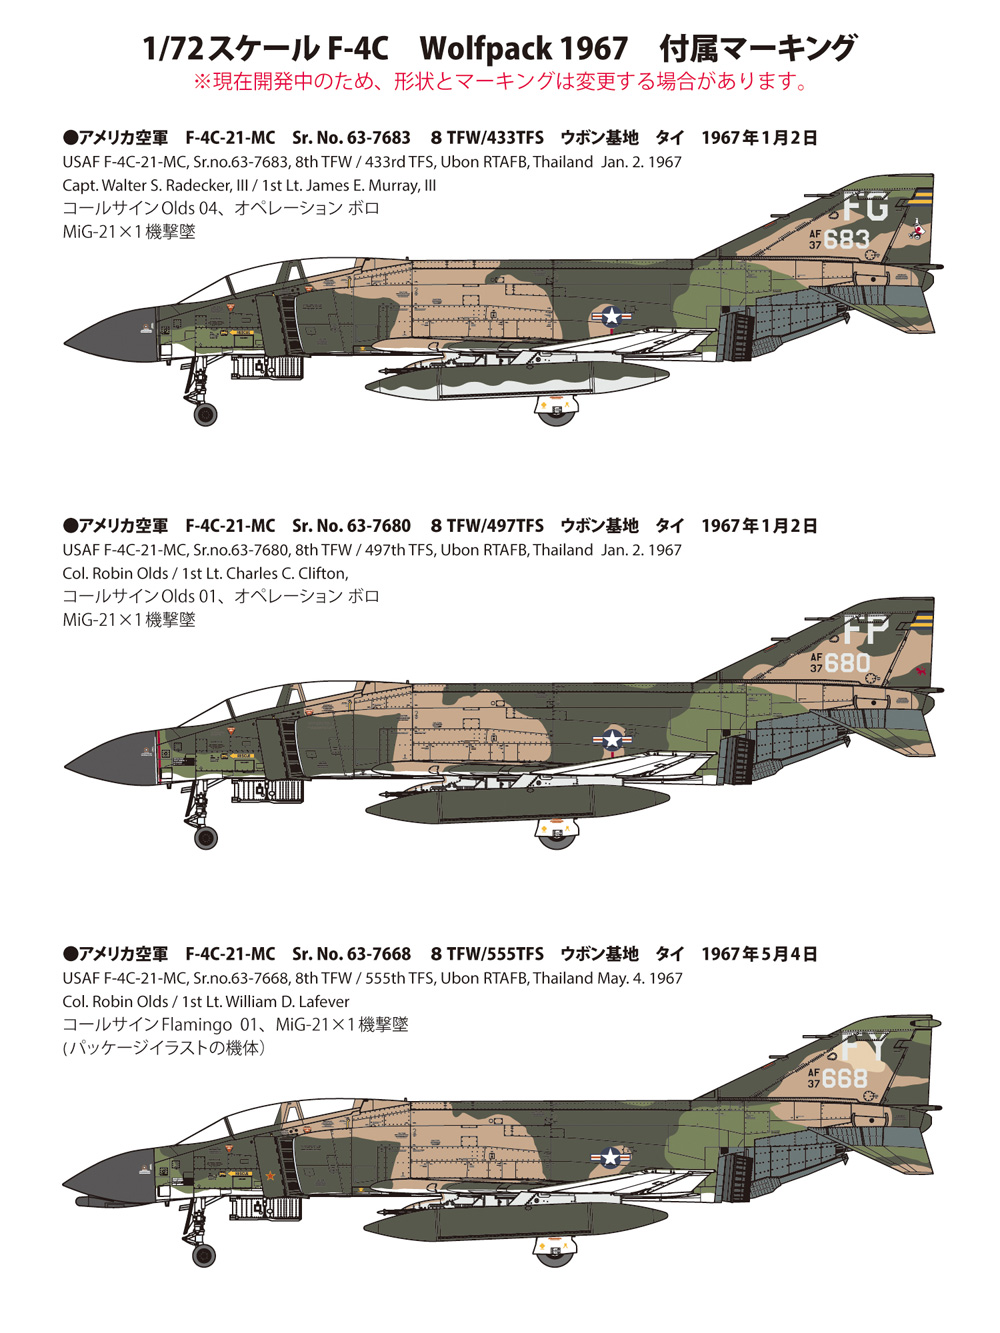 アメリカ空軍 F-4C ウルフパック 1967 プラモデル (ファインモールド 1/72 航空機 限定品 No.72846) 商品画像_1